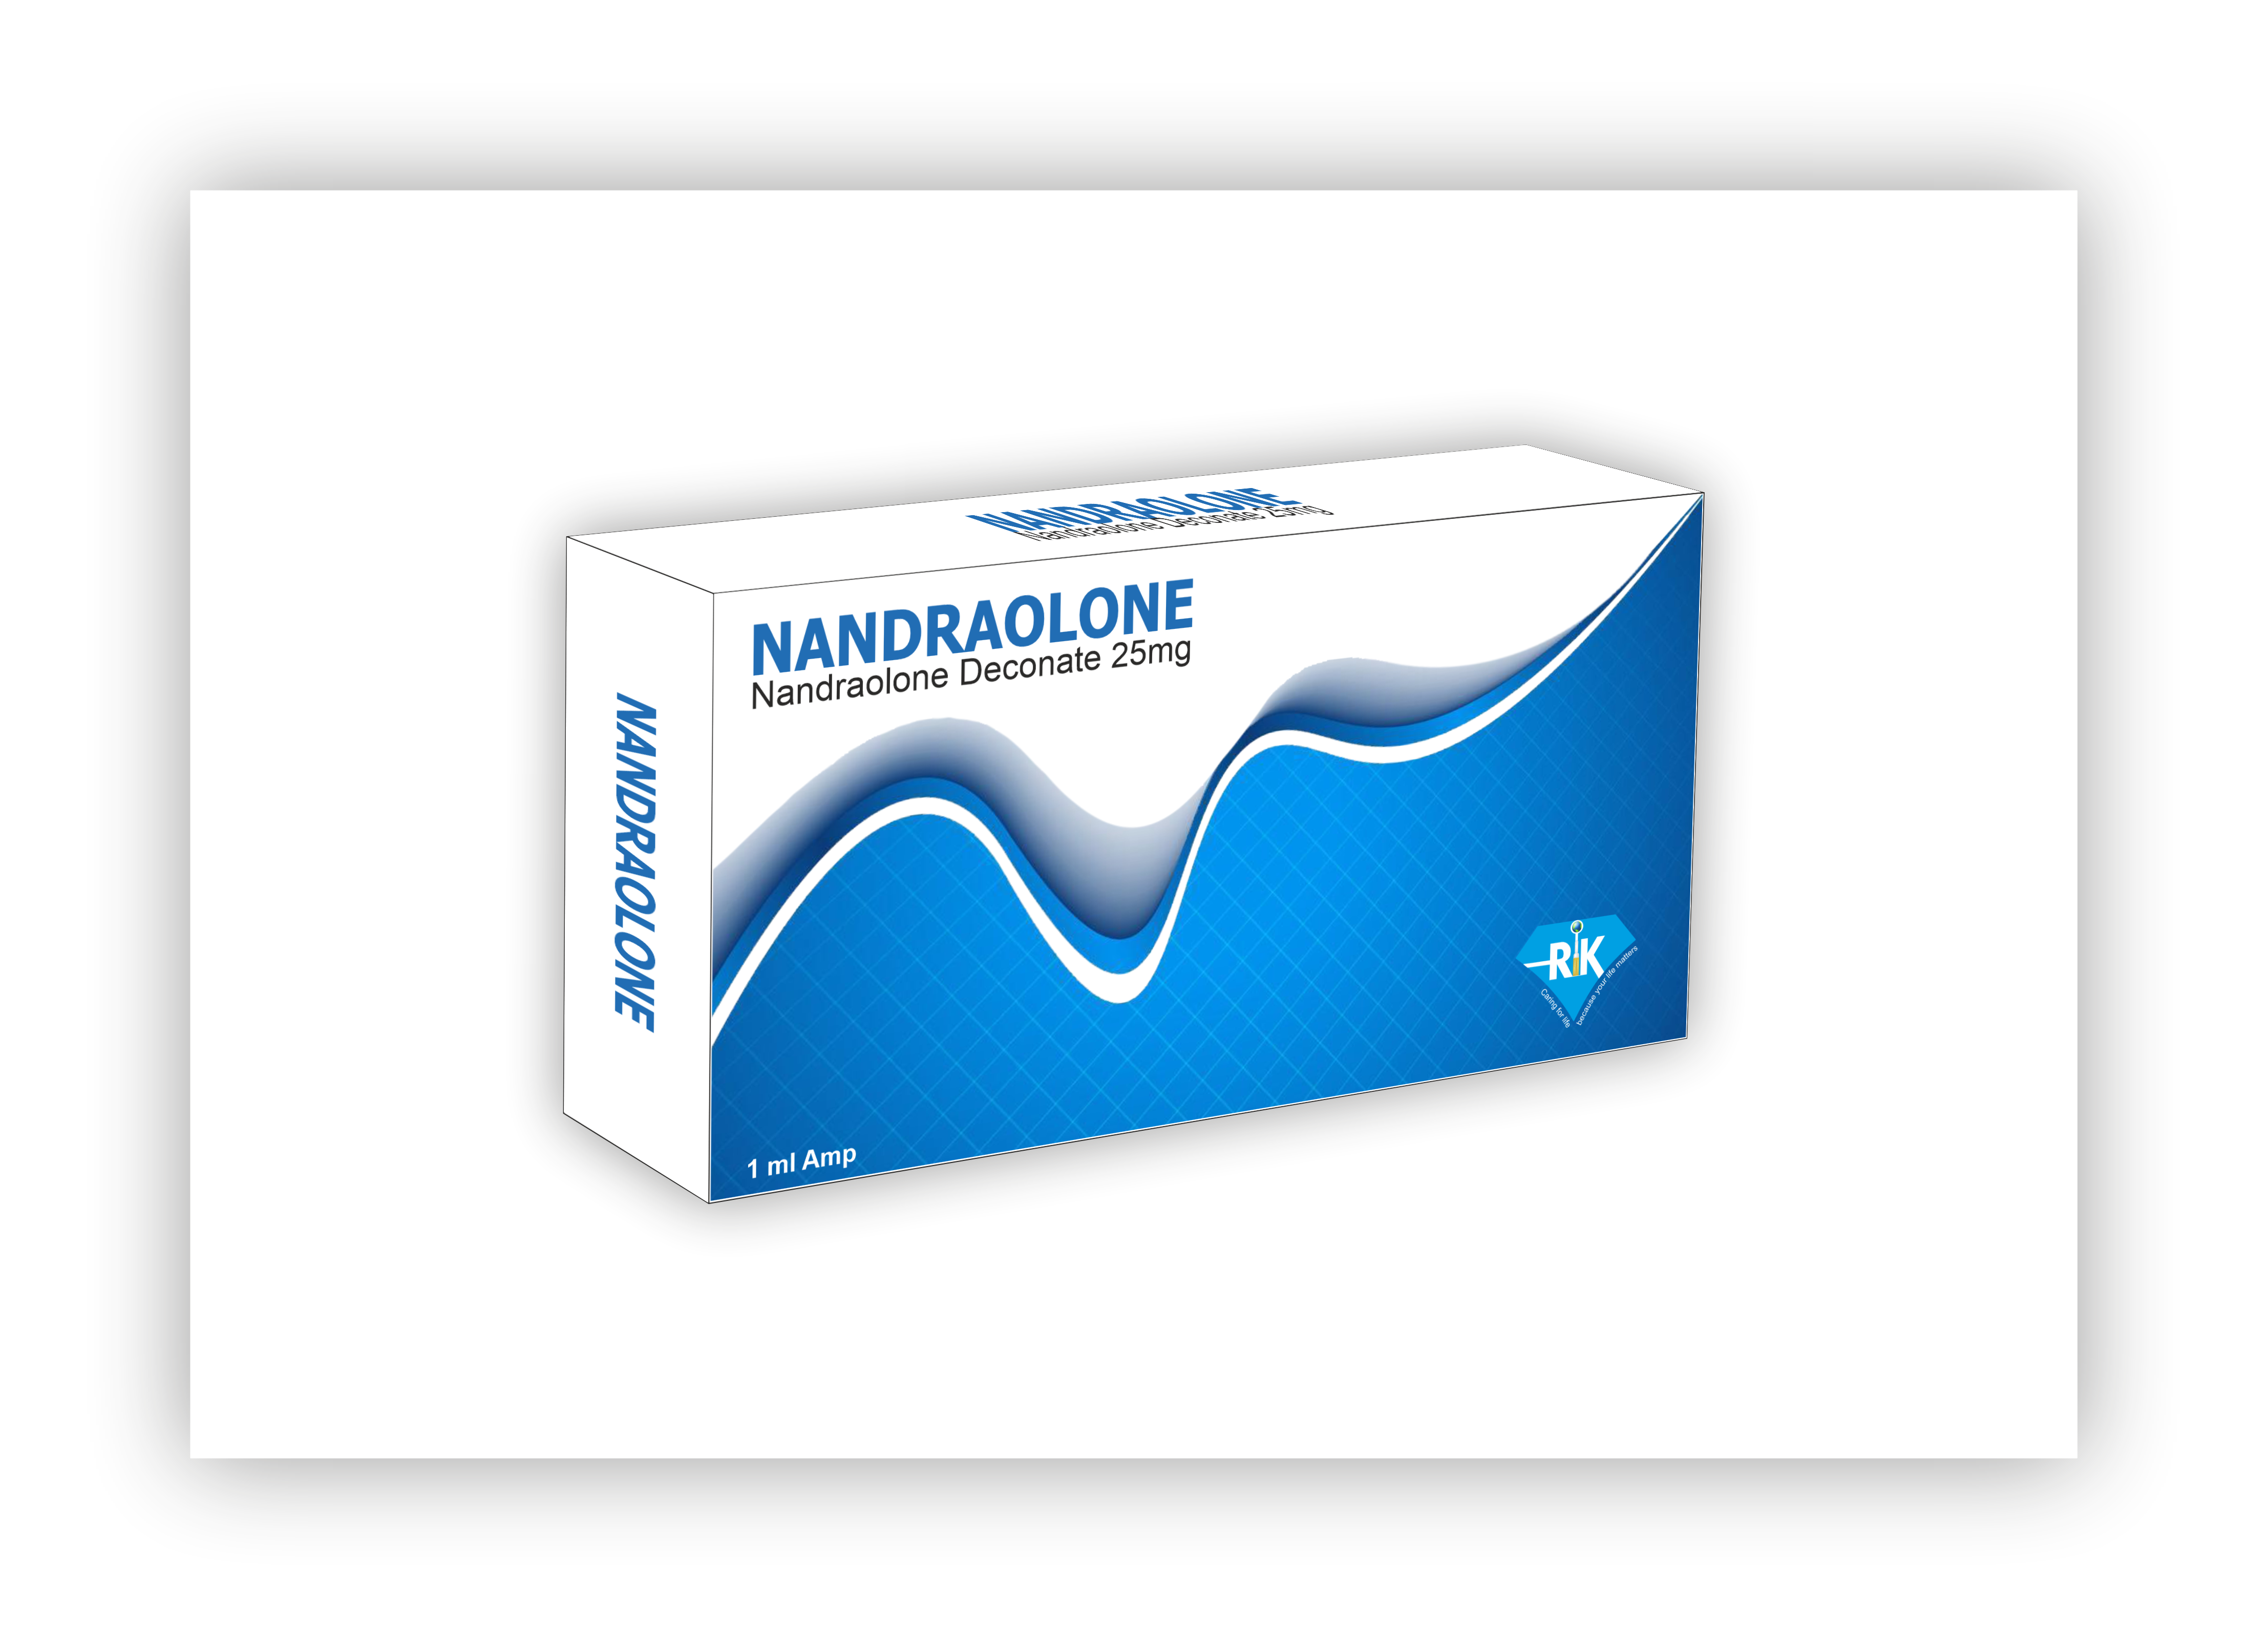 Nandraolone Deconate 25MG